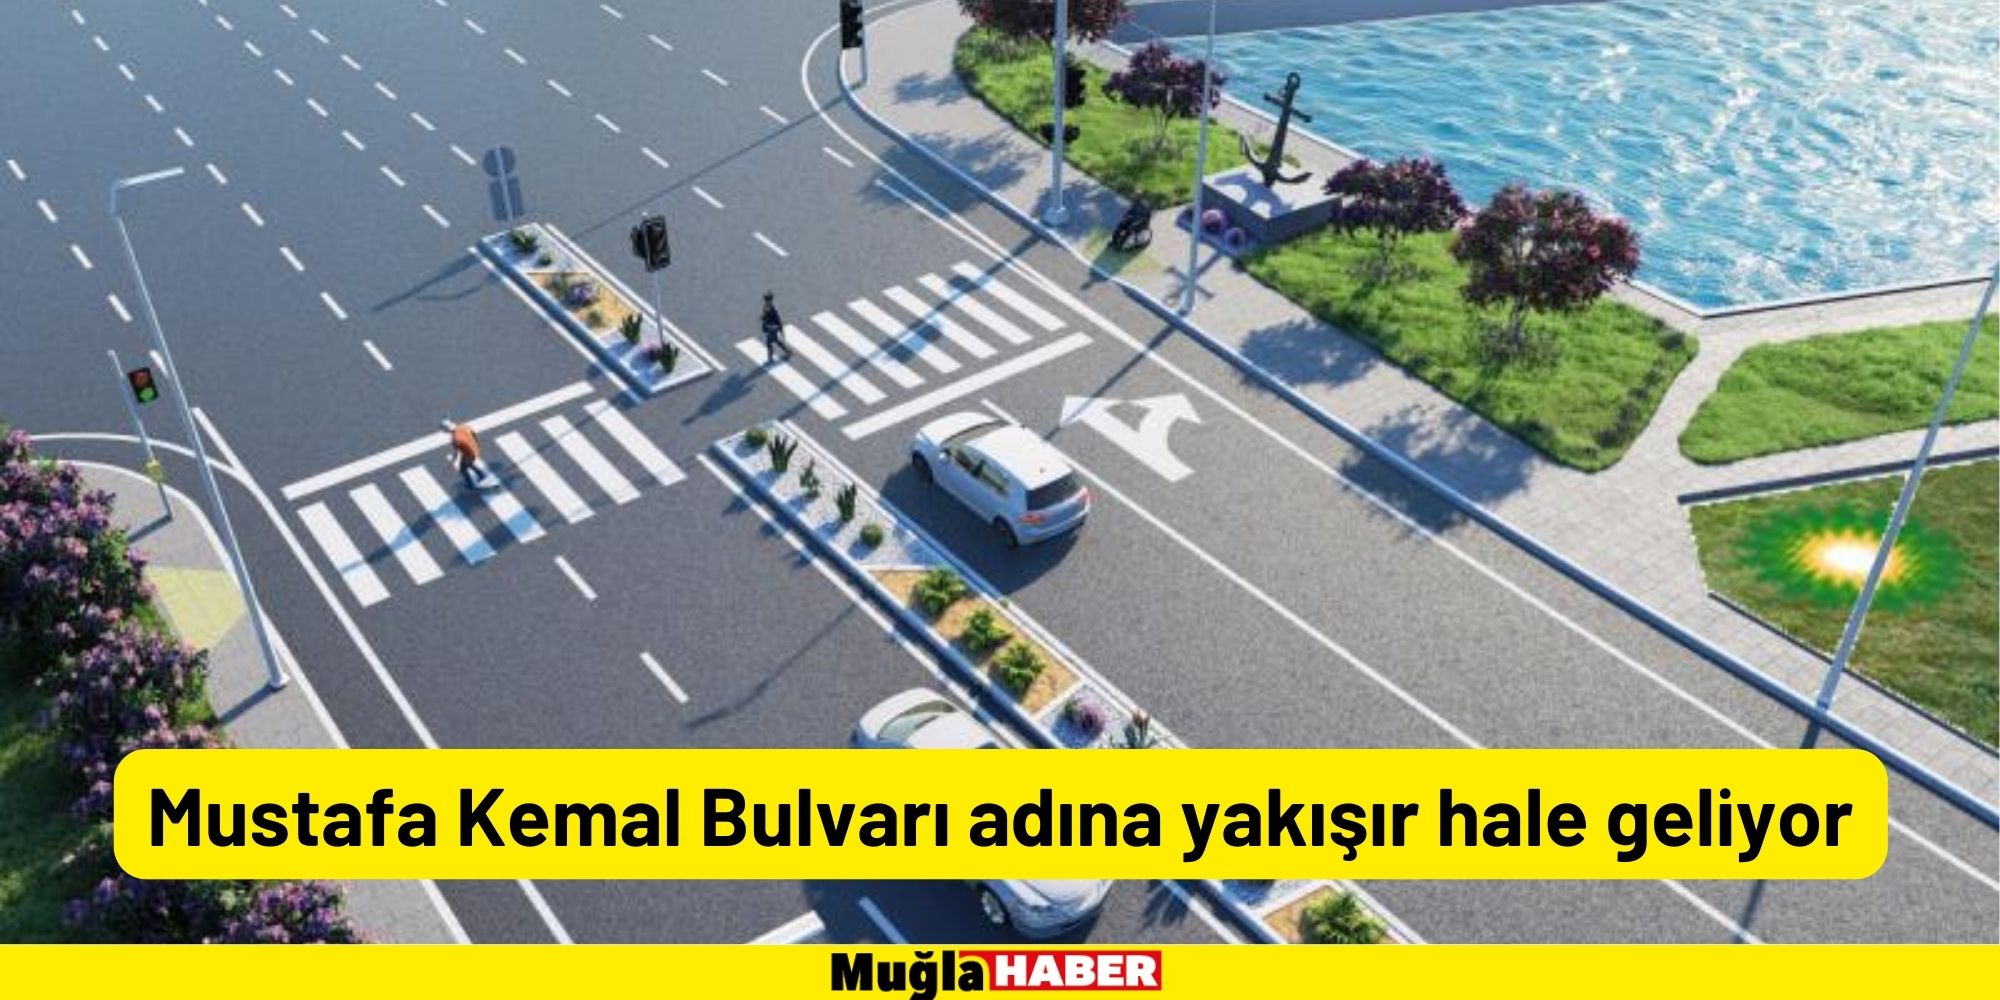 Mustafa Kemal Bulvarı adına yakışır hale geliyor